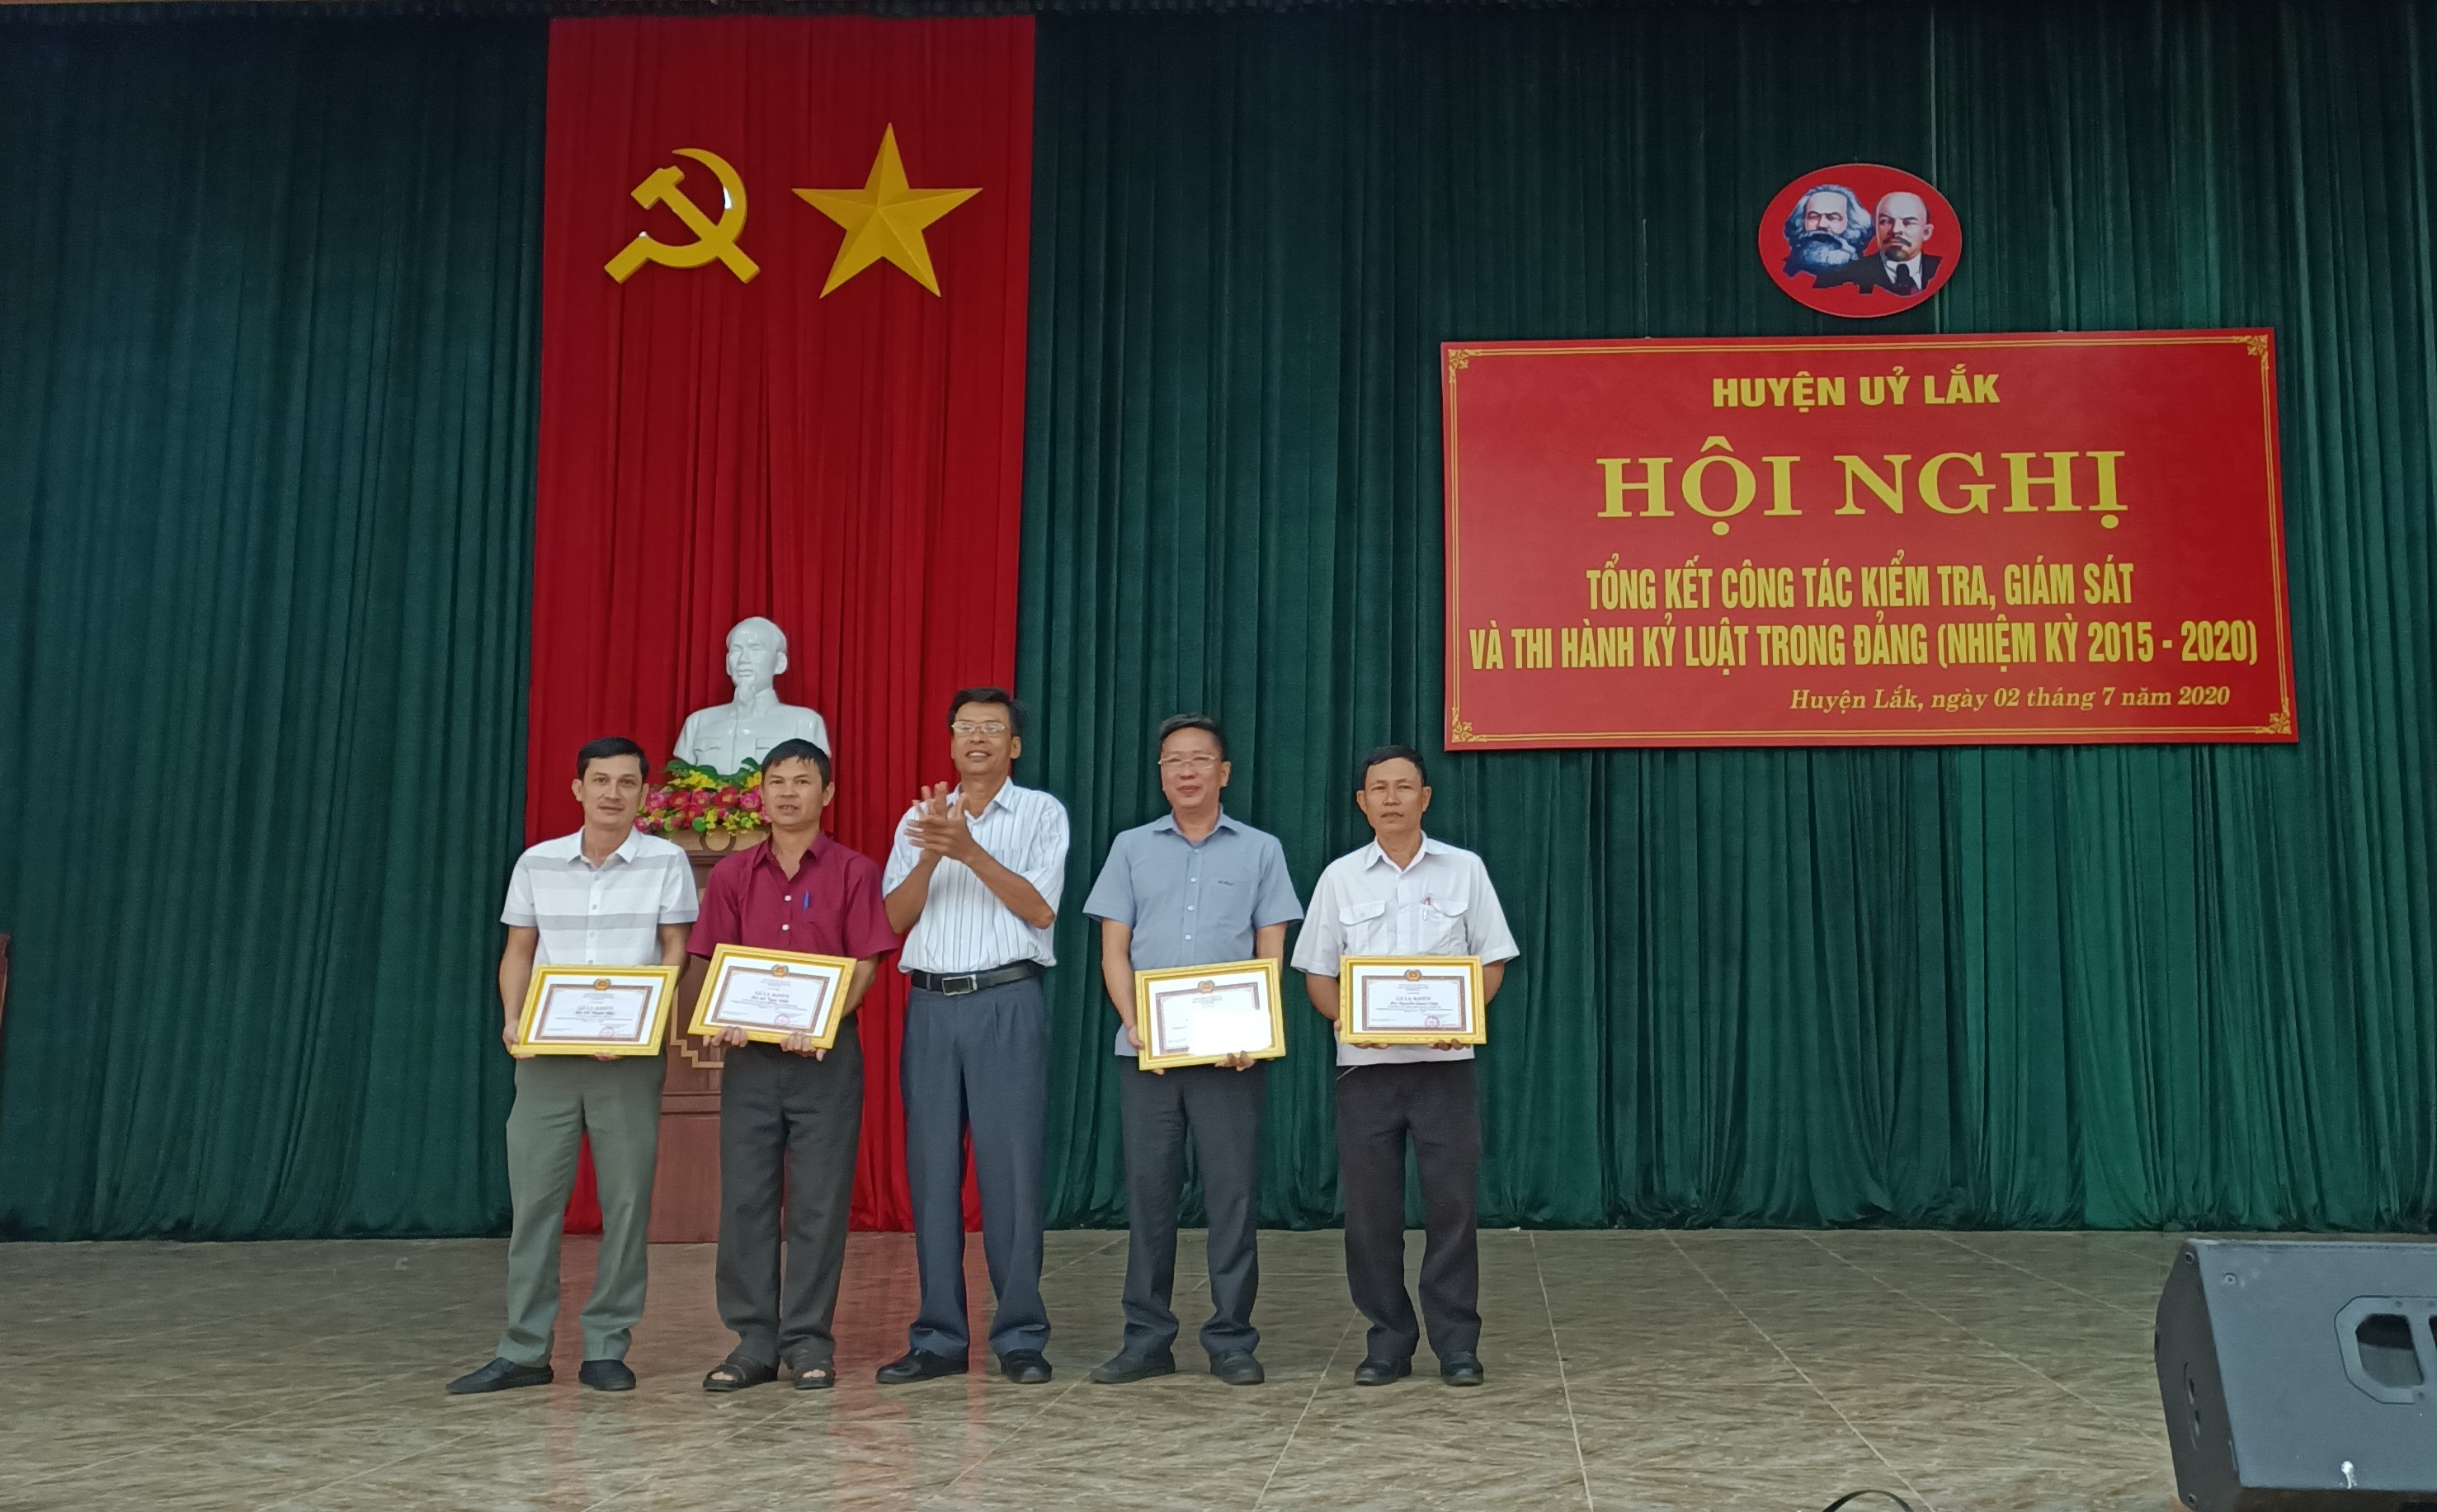 Huyện ủy Lắk tổng kết công tác kiểm tra, giám sát và thi hành kỷ luật trong Đảng, nhiệm kỳ 2015 - 2020